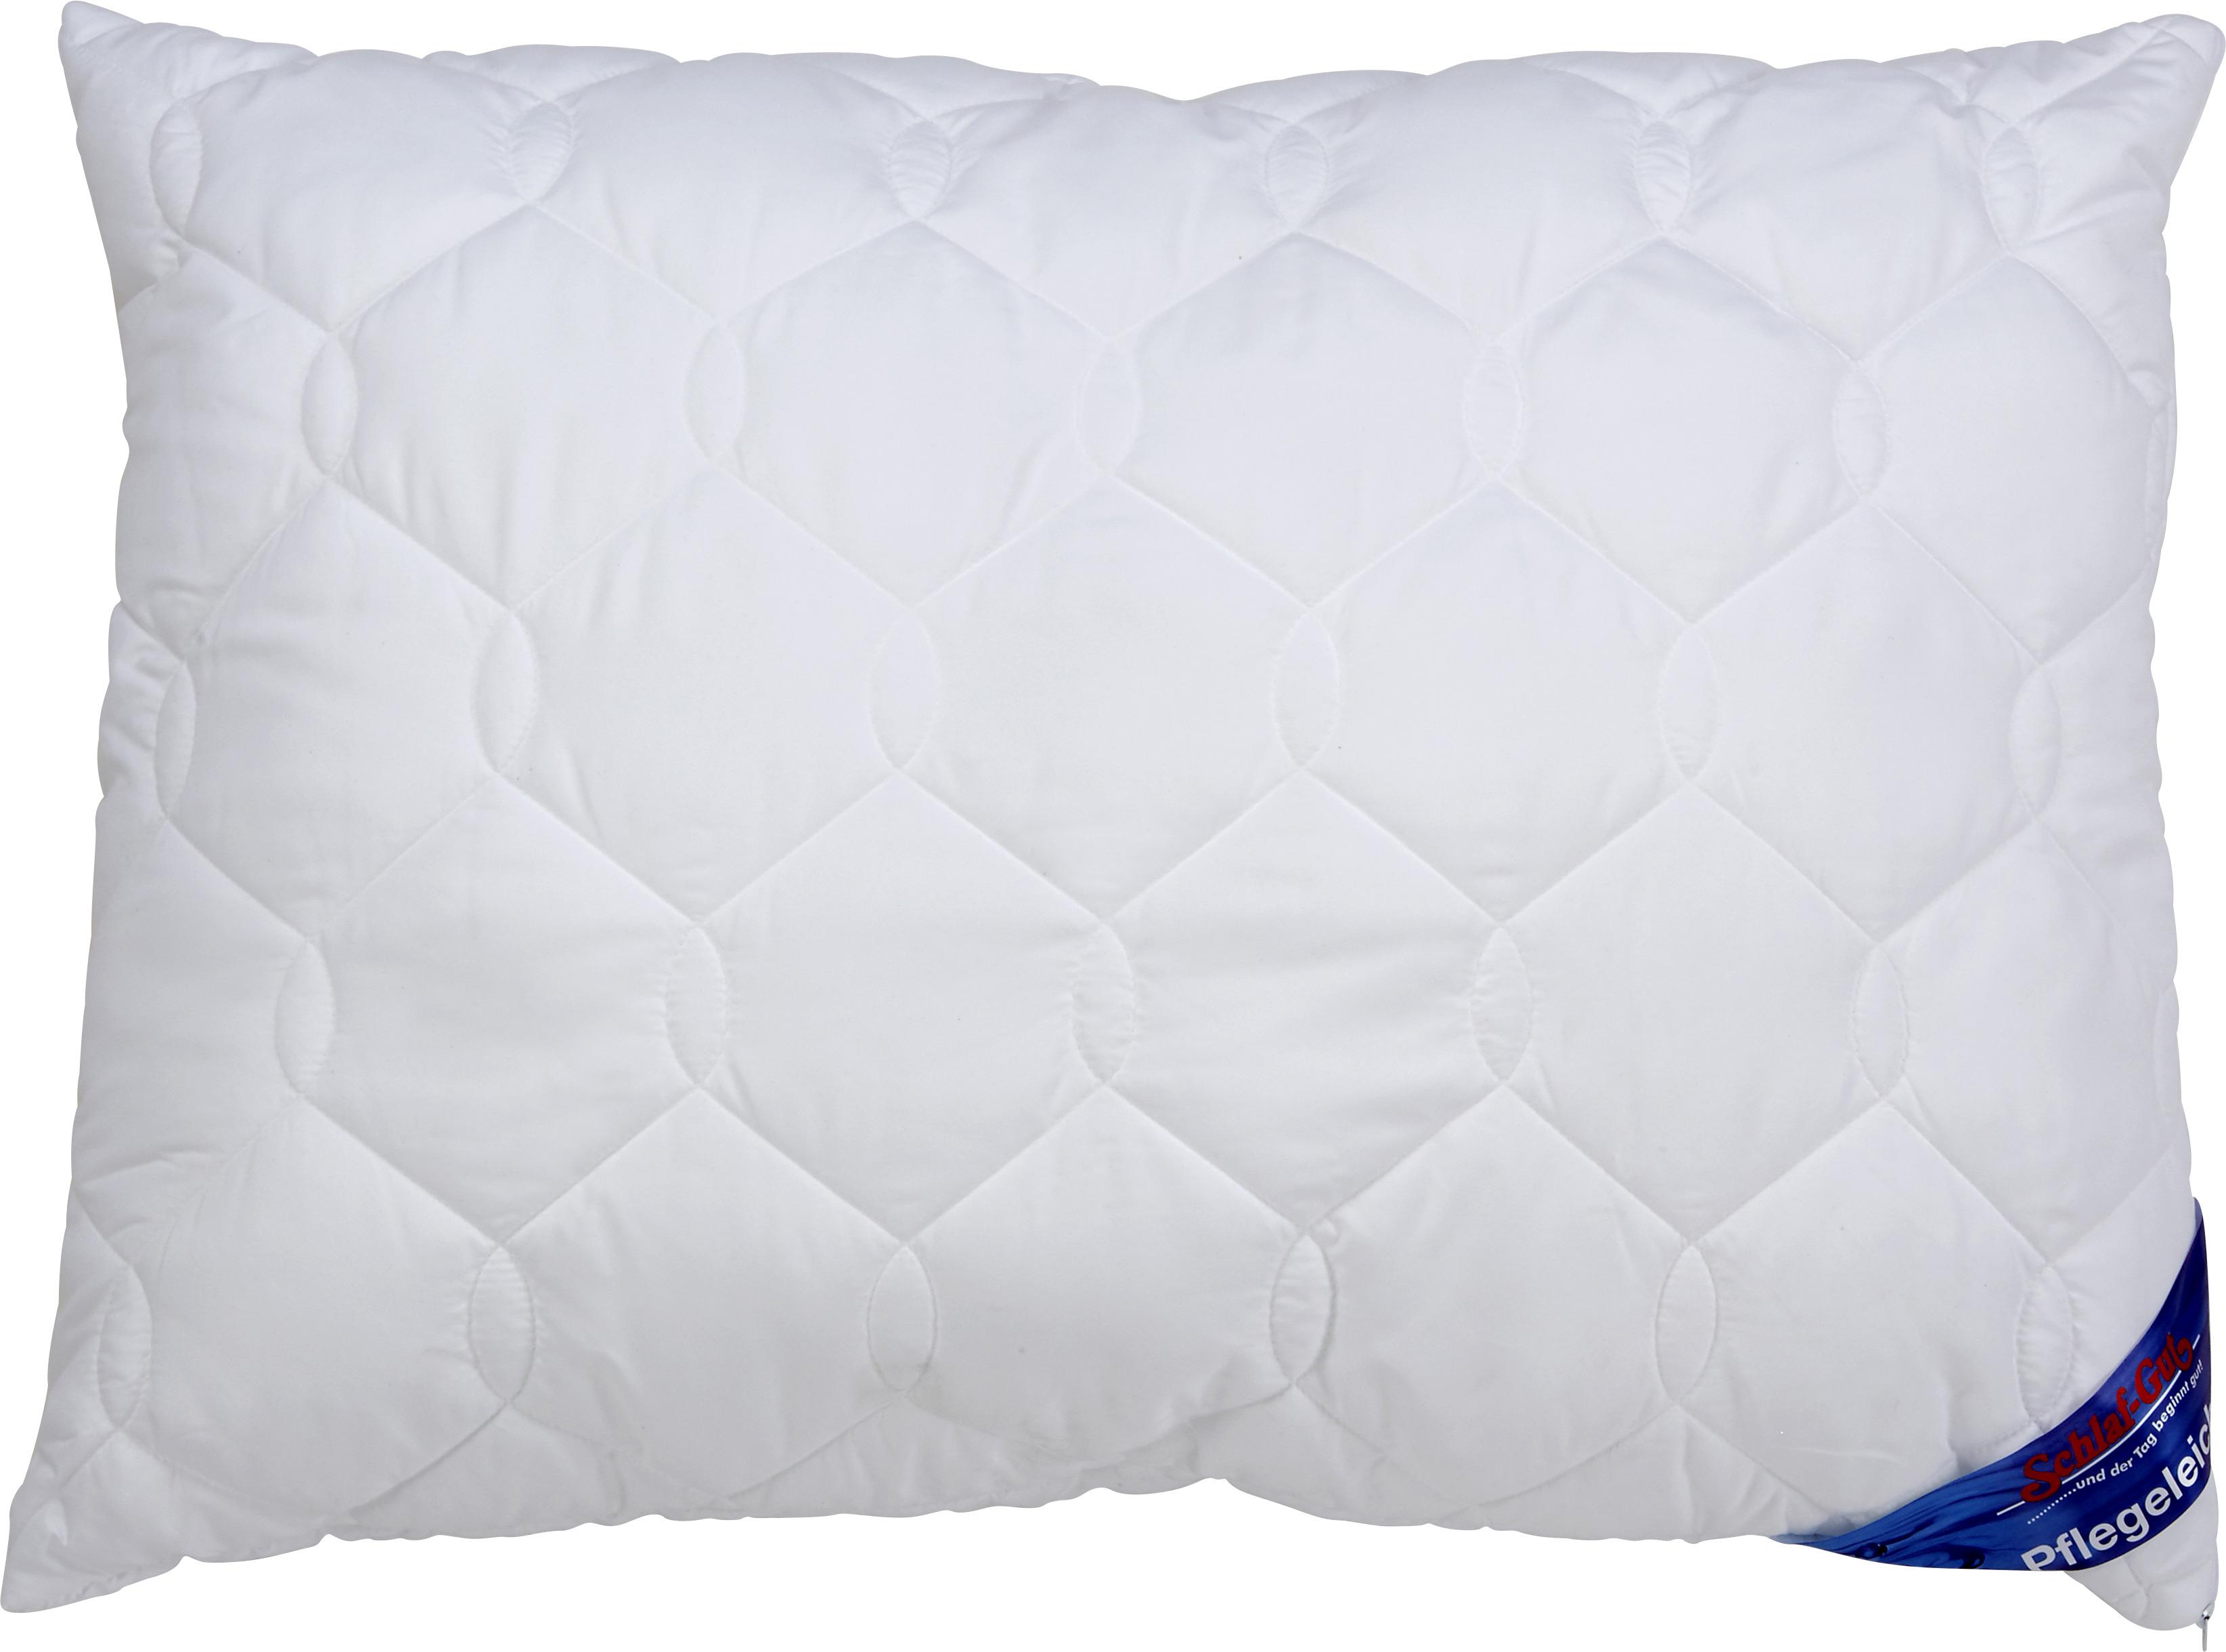 Kopfkissen Schlaf-Gut Tencel 70x90 cm Polyester - Weiß, KONVENTIONELL, Textil (70/90cm) - FAN